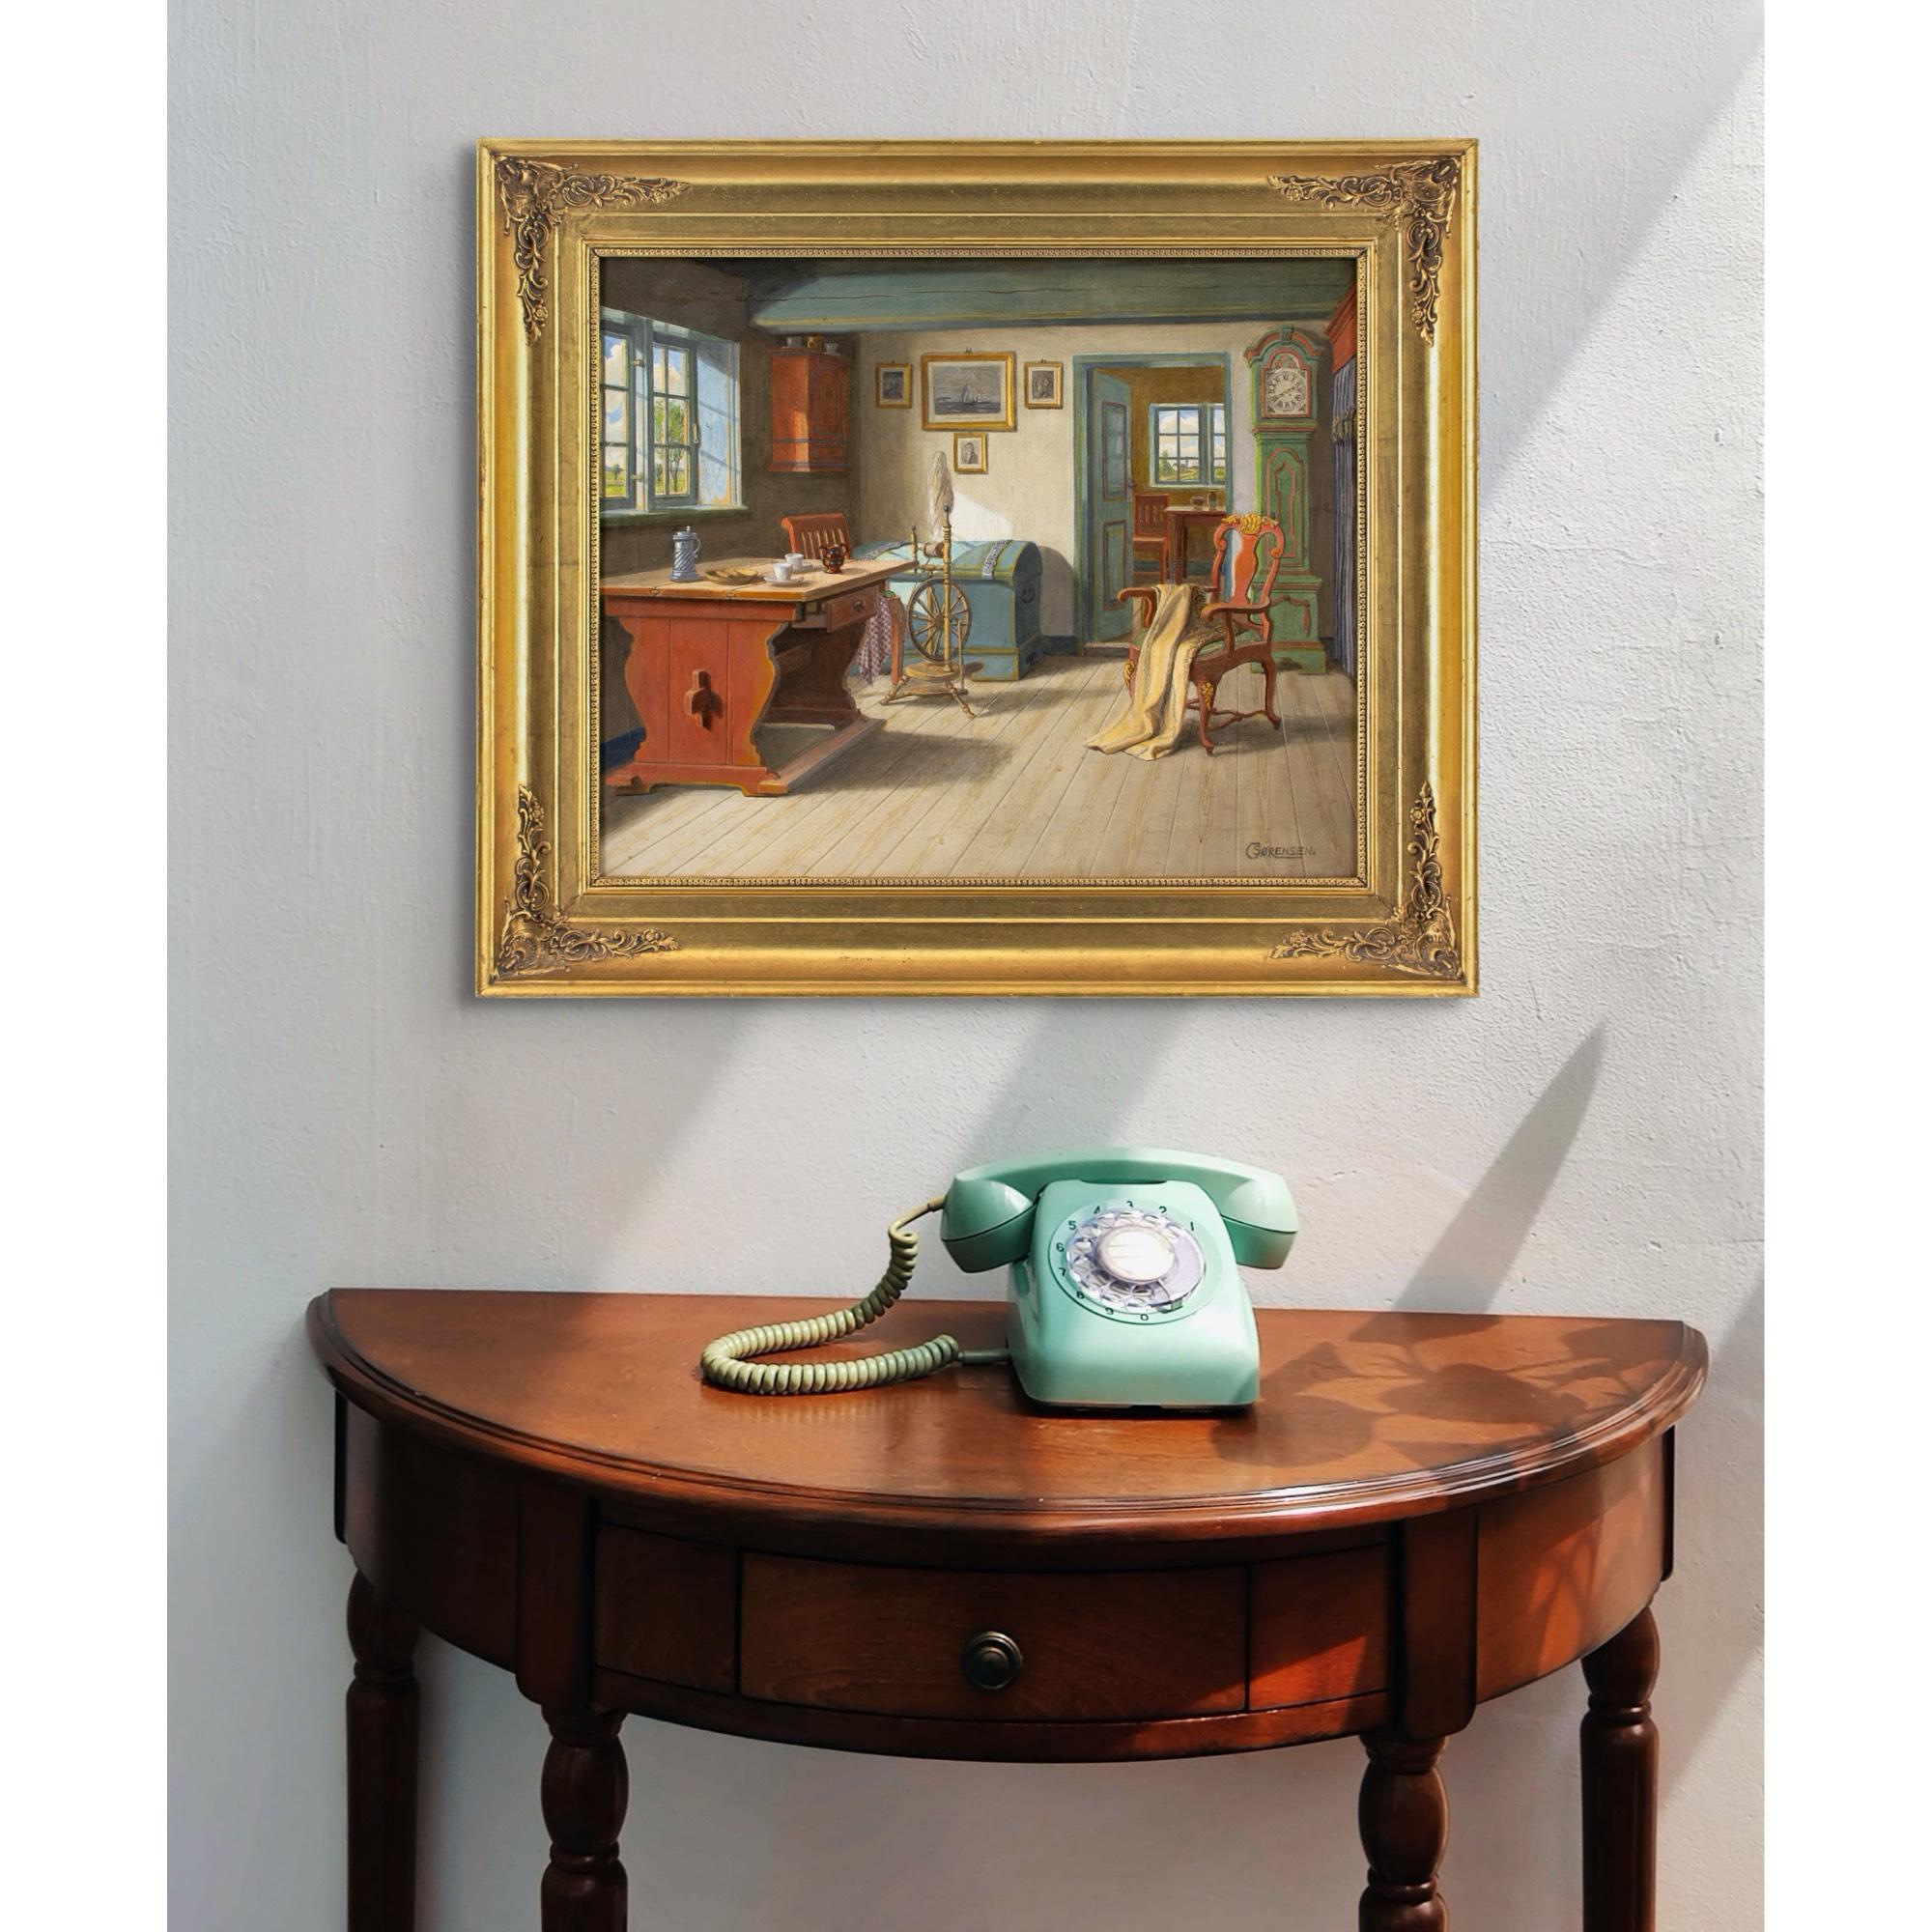 Cette peinture à l'huile du début du XXe siècle de l'artiste danois C.C. représente un intérieur rustique avec une table, un rouet, une chaise, une horloge et un coffre.

On sait peu de choses sur A.C.C., ce qui est inhabituel compte tenu de leur